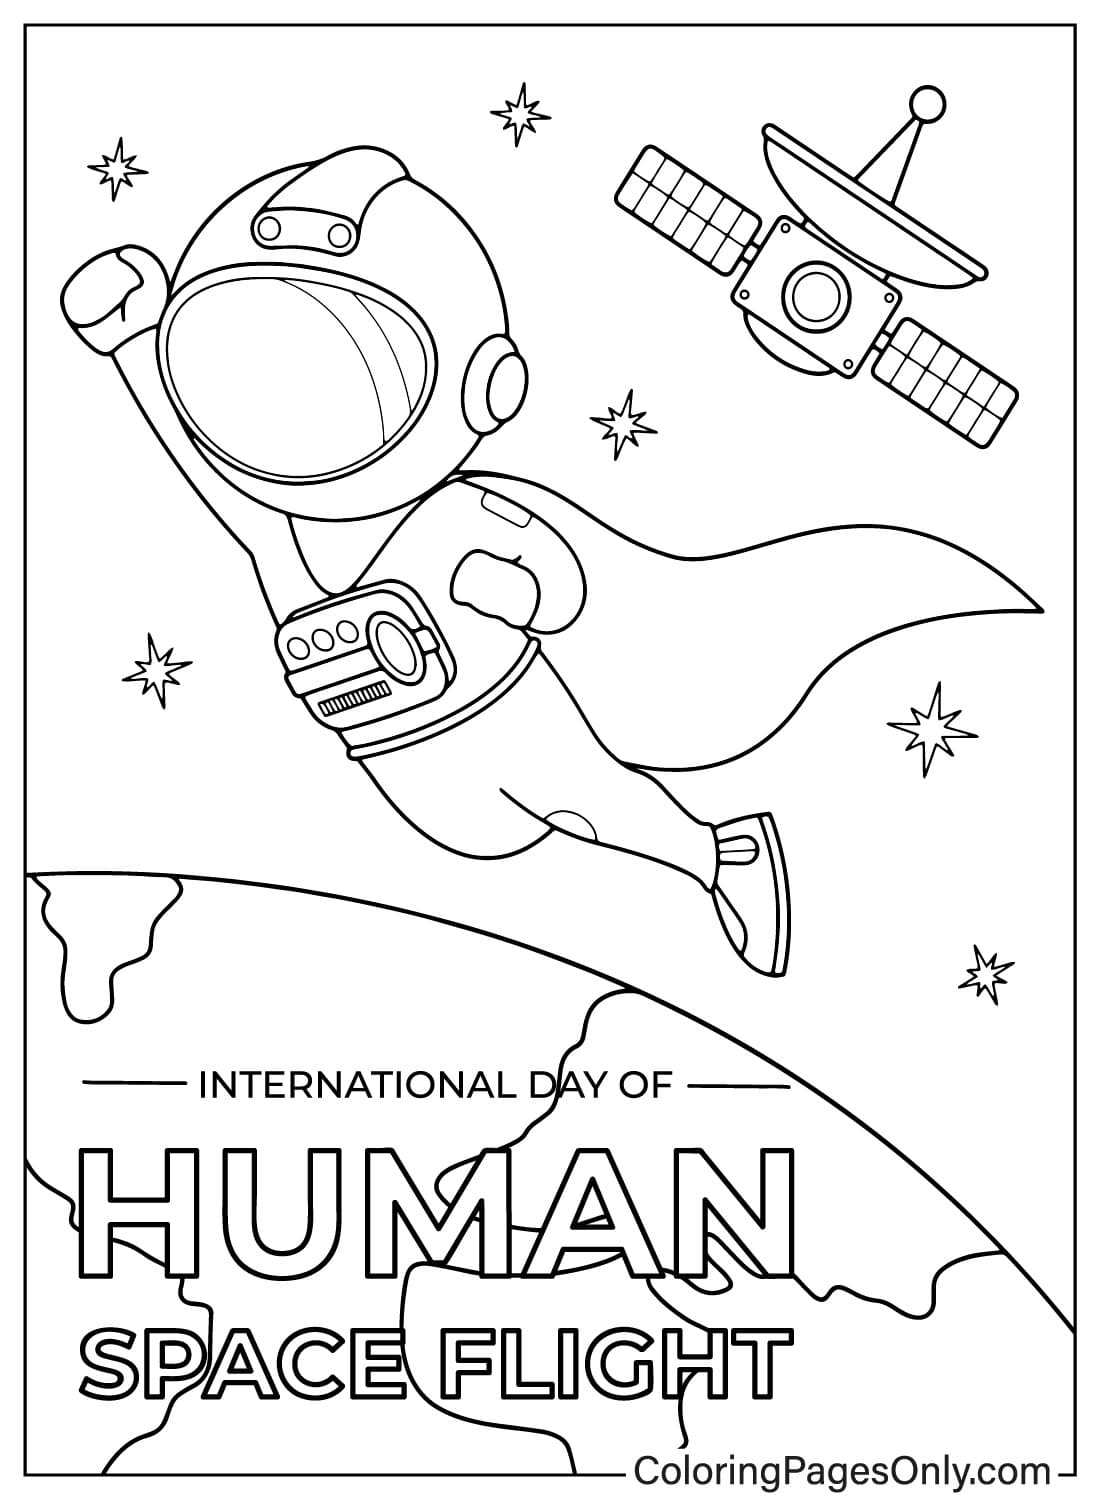 صور اليوم الدولي لرحلة الإنسان إلى الفضاء صفحة التلوين من اليوم الدولي لرحلة الإنسان إلى الفضاء